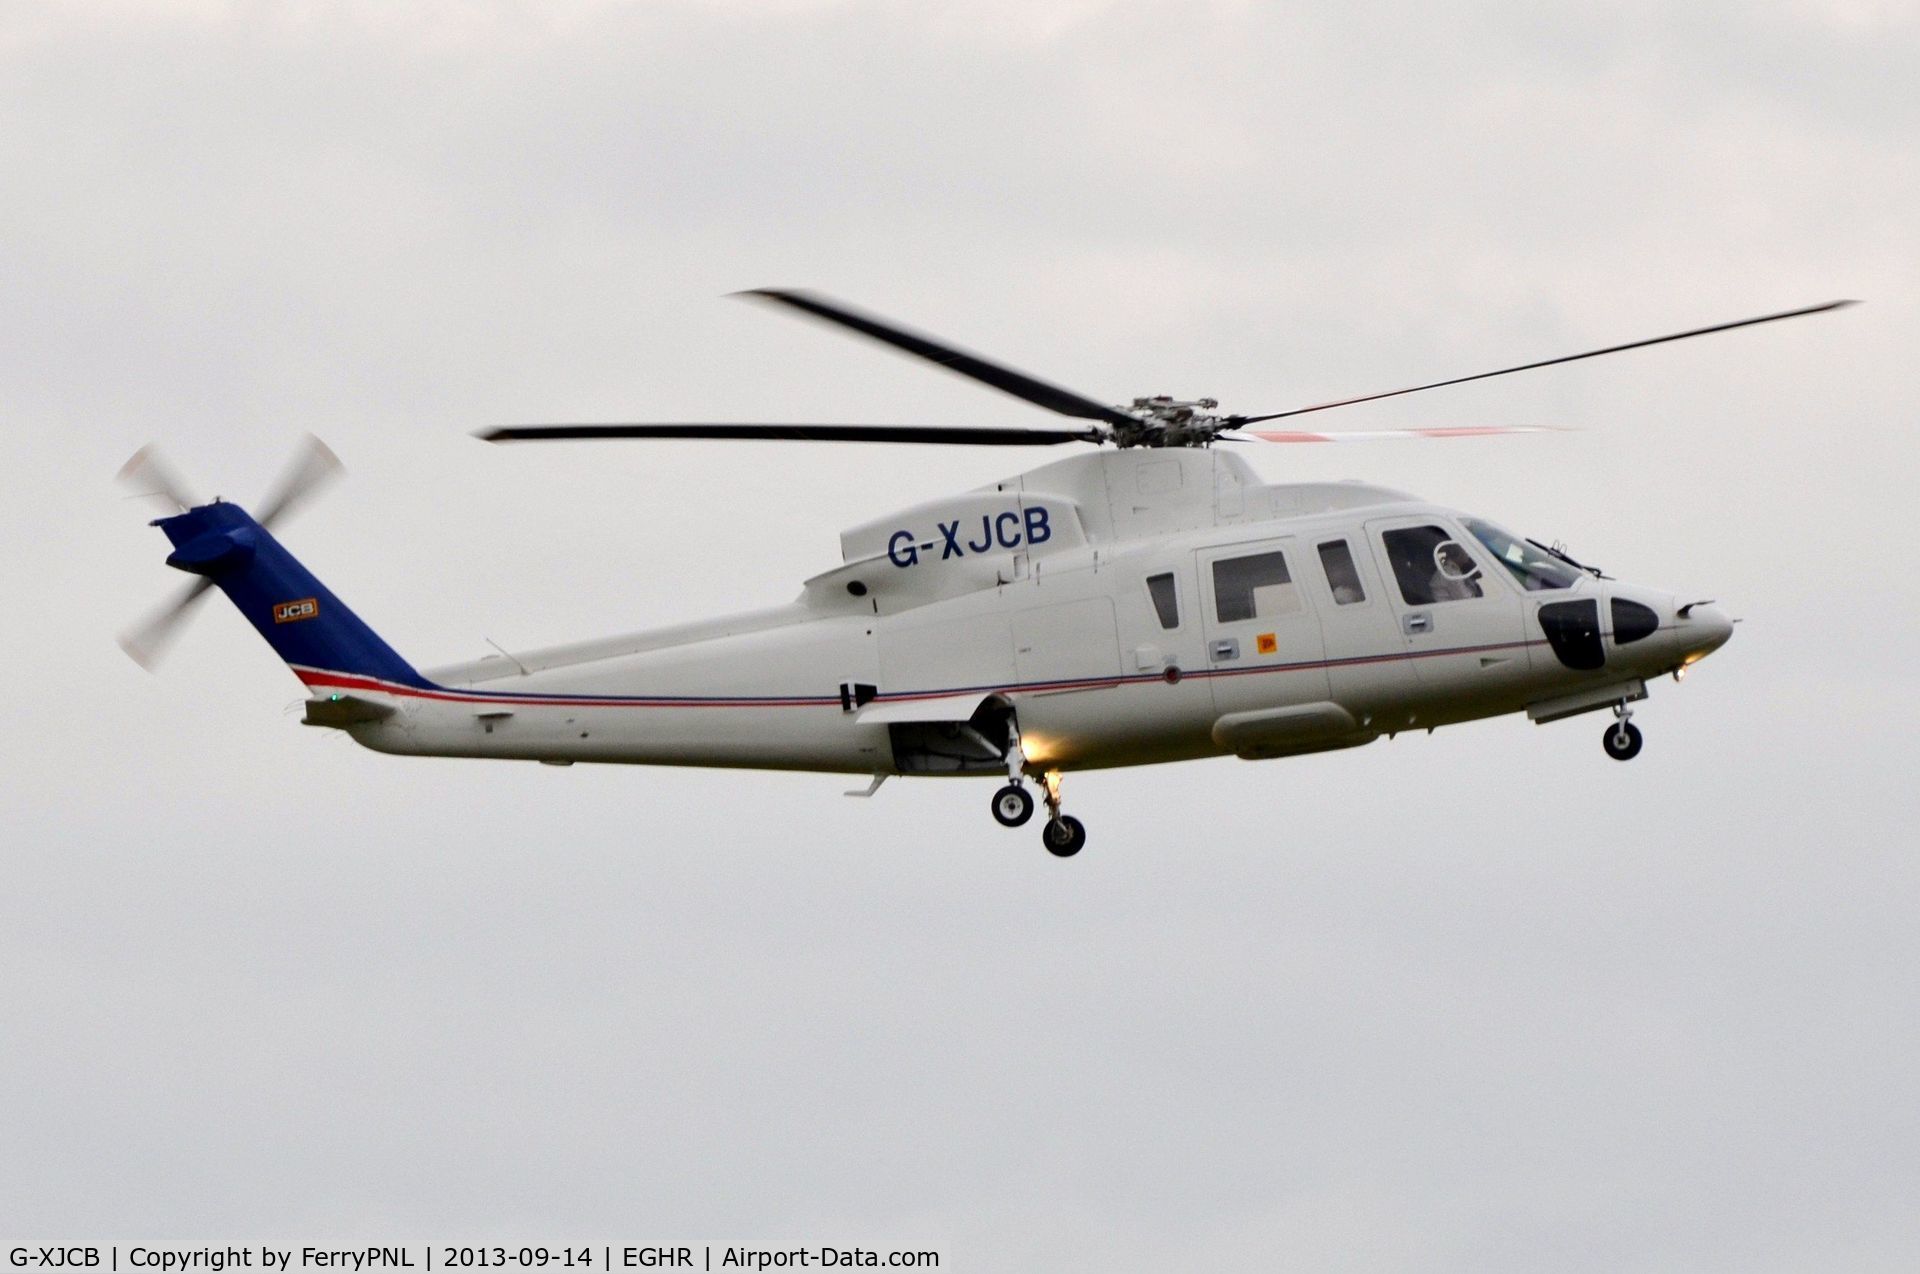 G-XJCB, 2006 Sikorsky S-76C C/N 760616, JCB's S76 takes-off from Goodwood